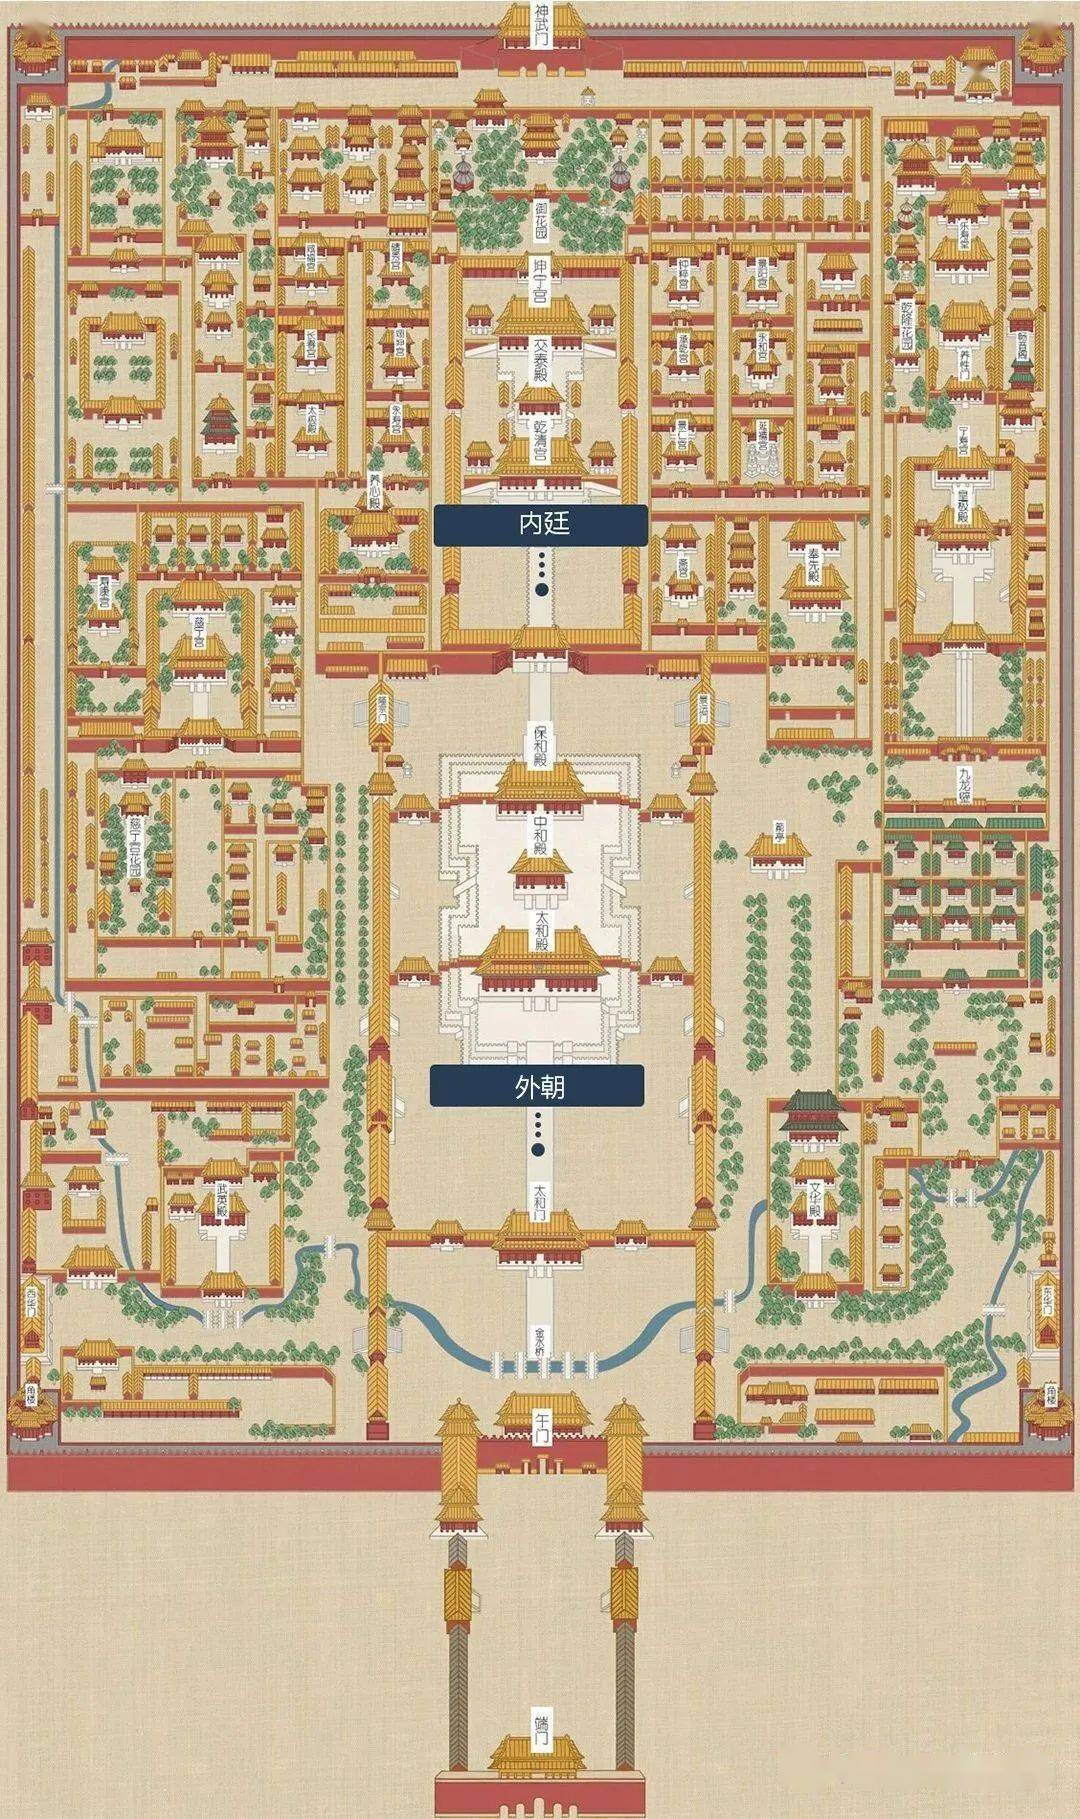 形成众星拱月的布局  自午门至神武门为紫禁城的中轴线  建筑按使用